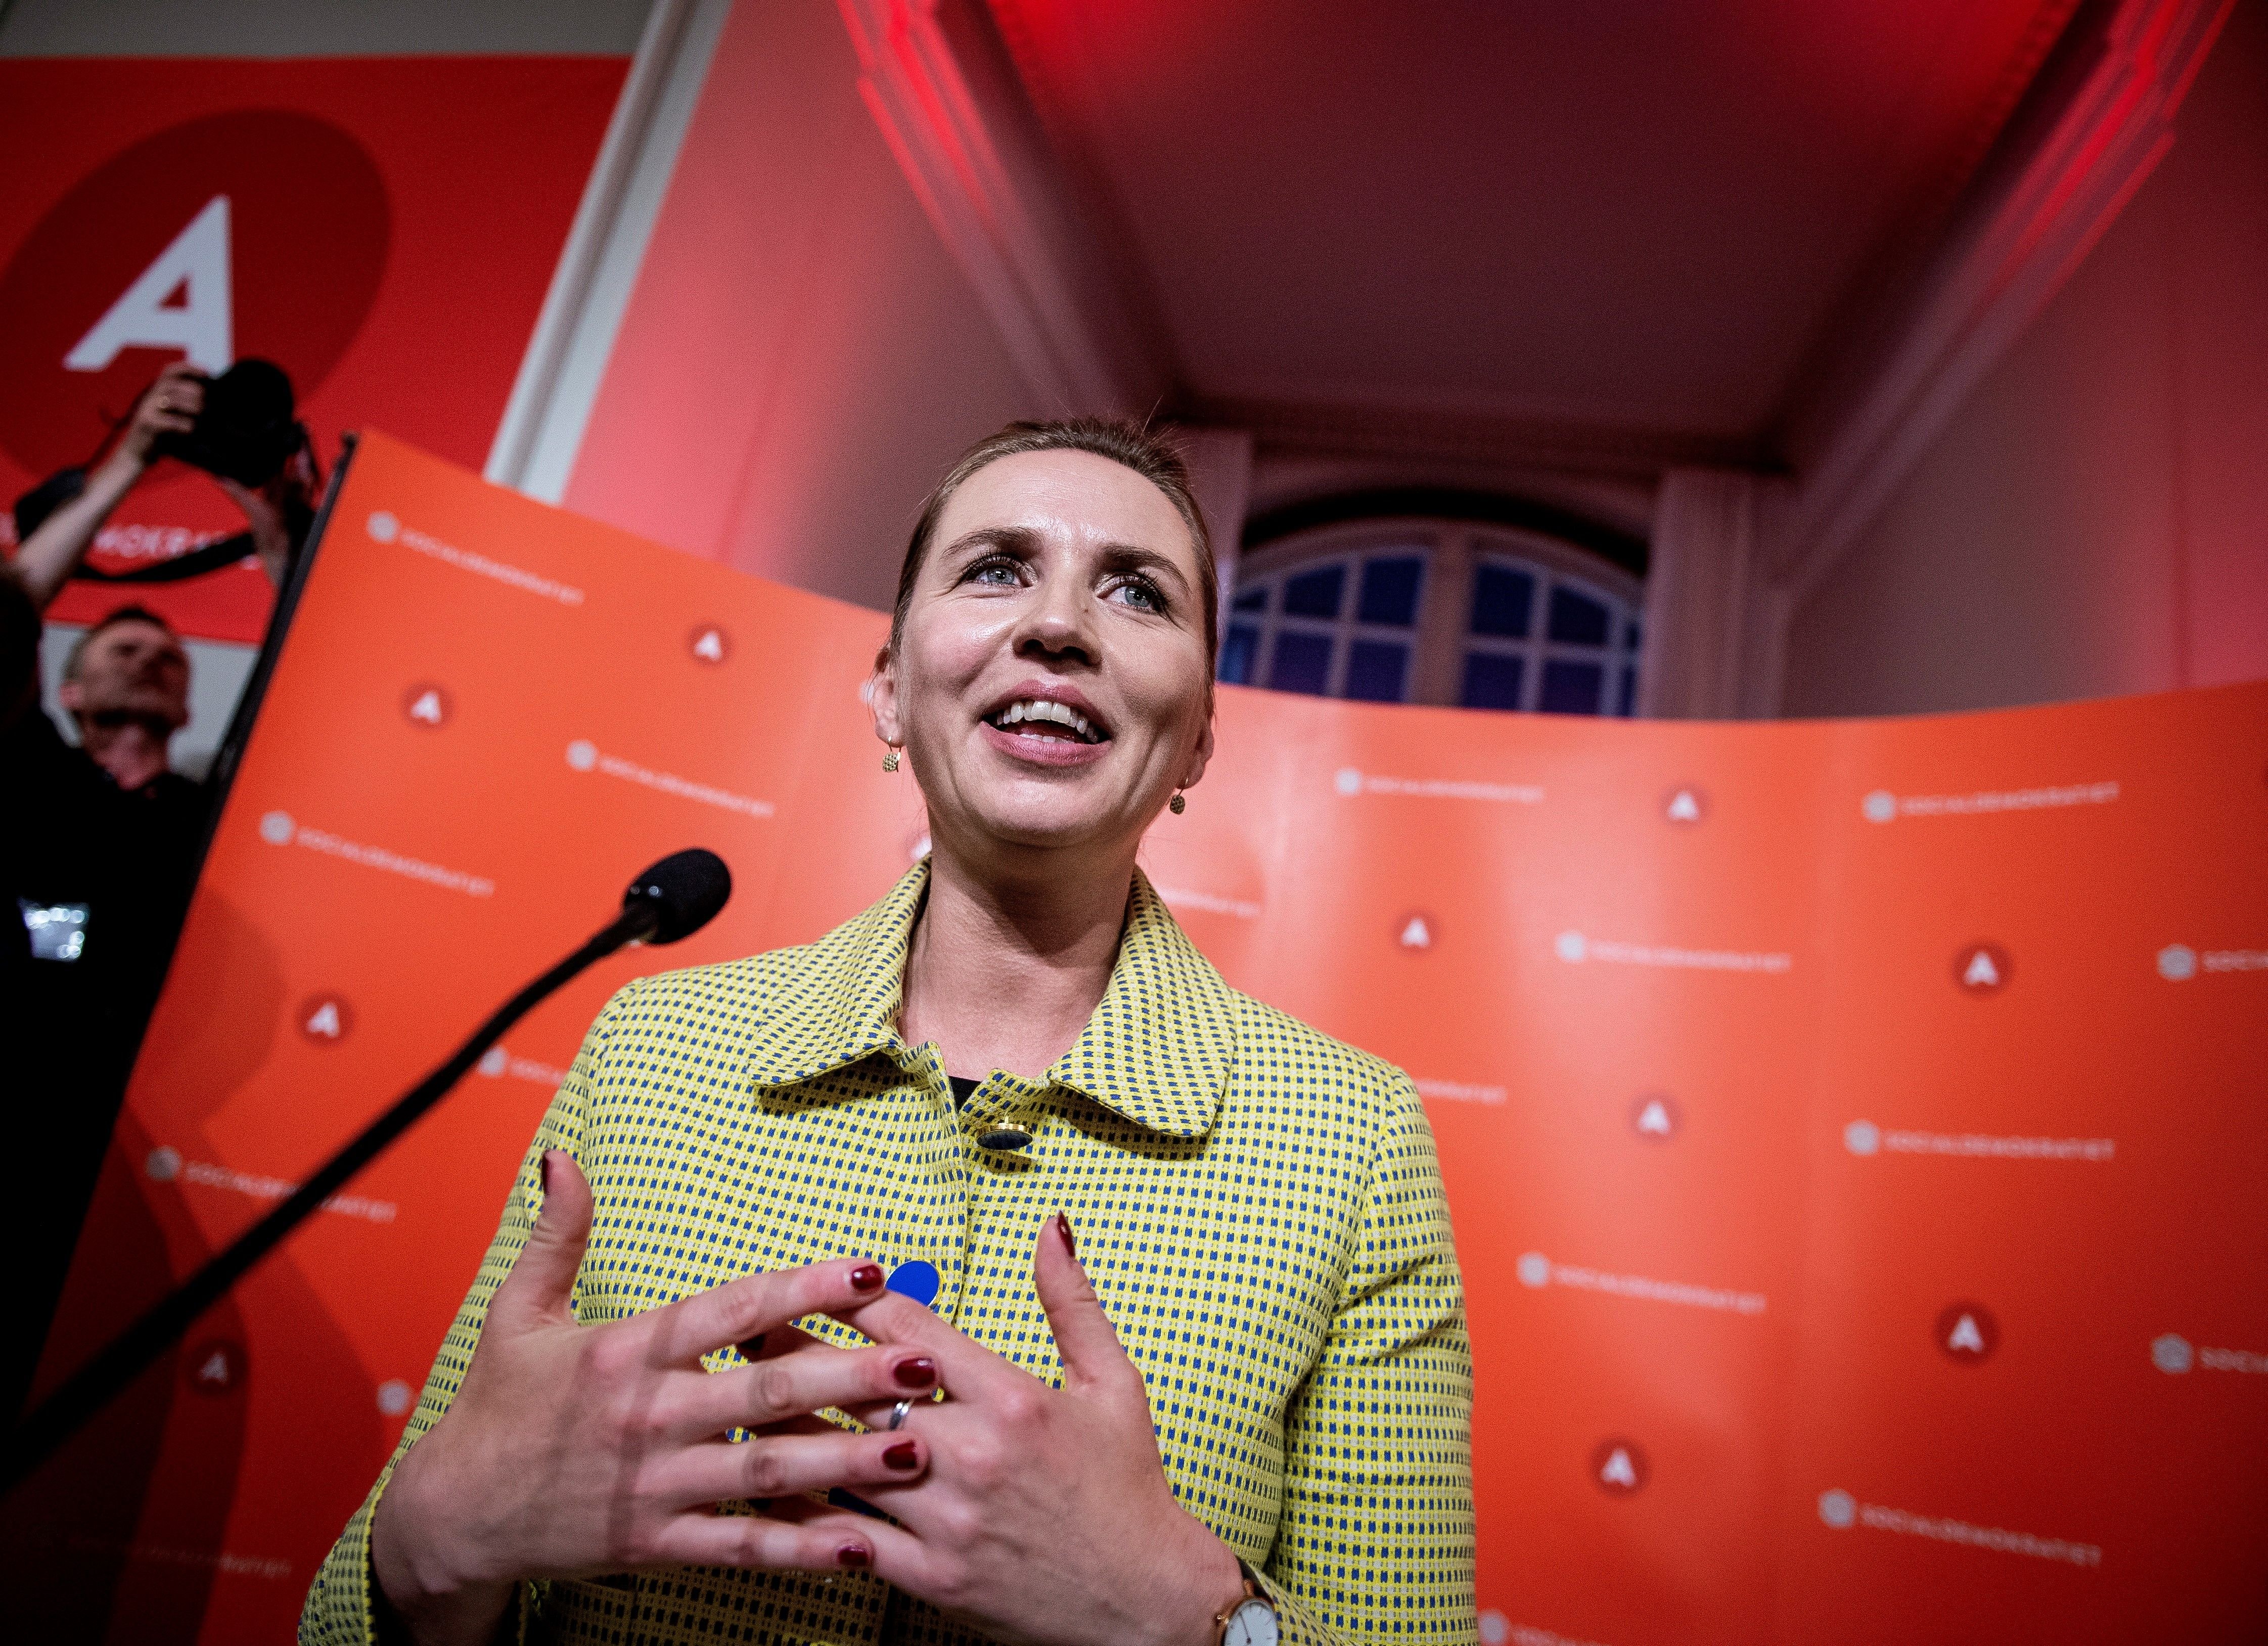 El centroizquierda recupera el poder en Dinamarca y la derecha xenófoba se hunde